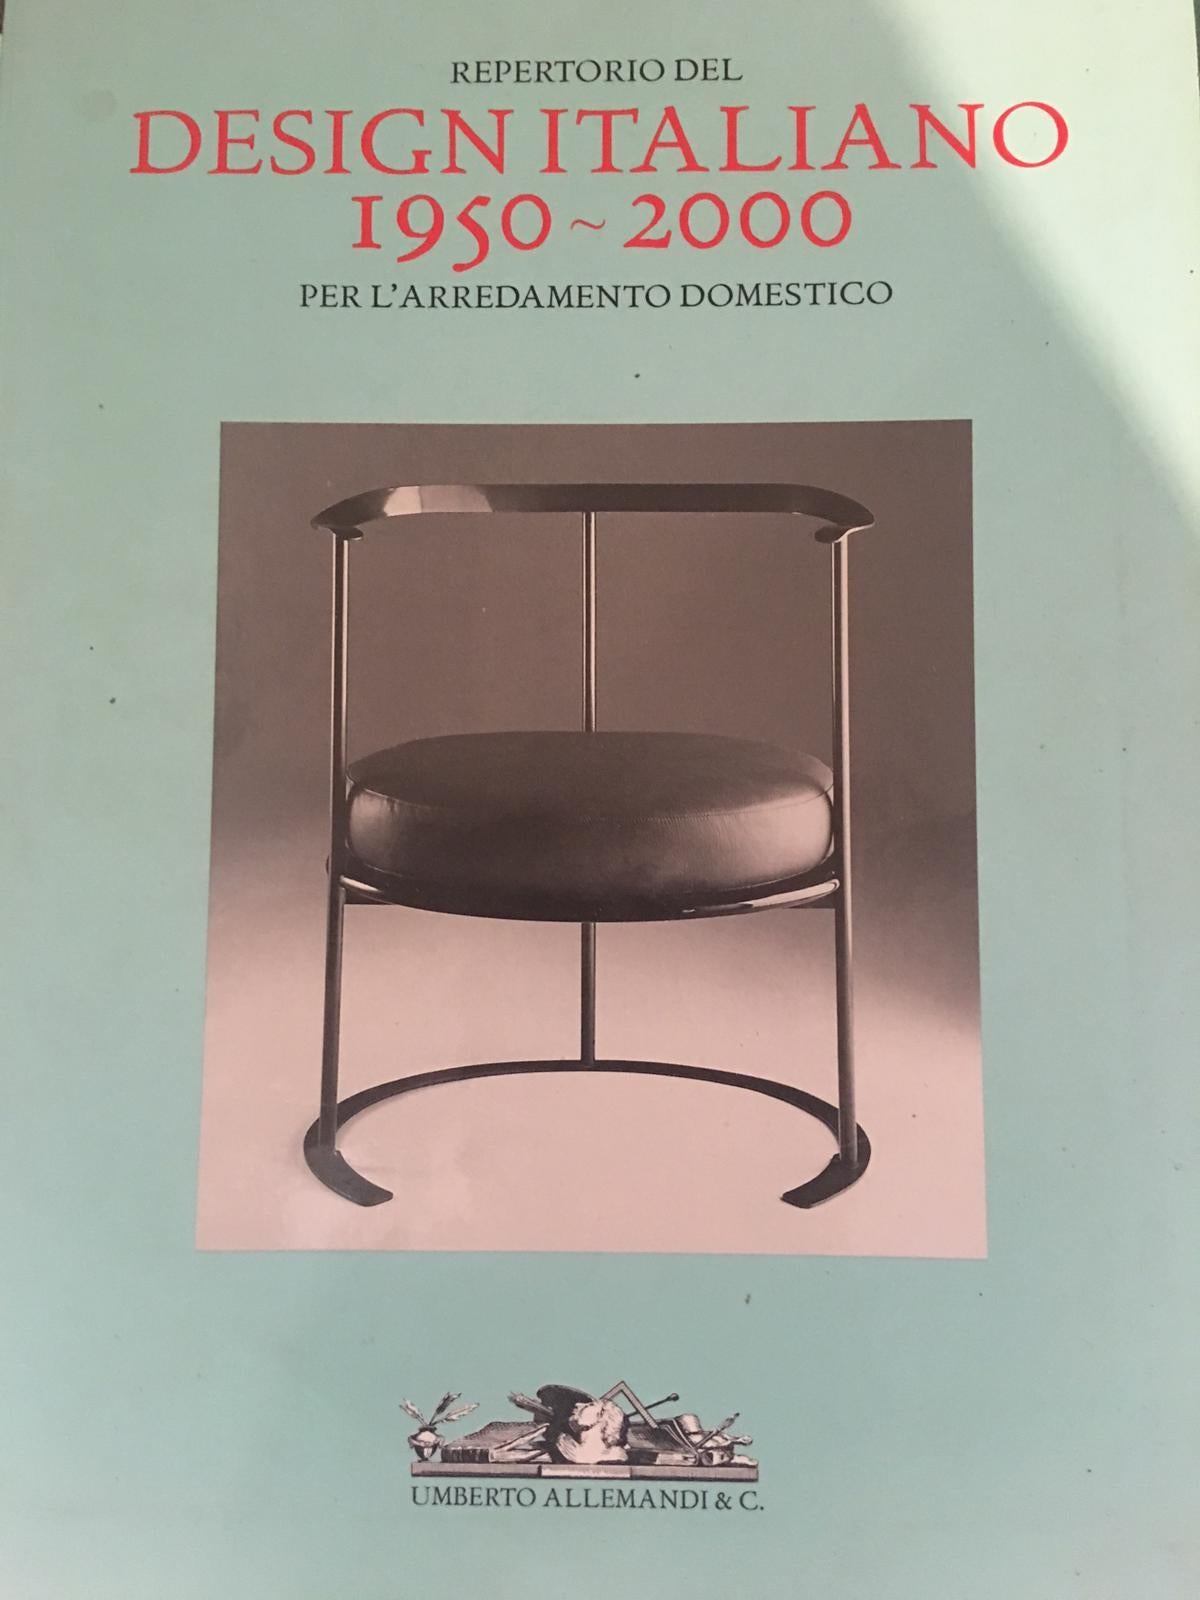 Metal Catilina Chairs by Luigi Caccia Dominioni for Azucena